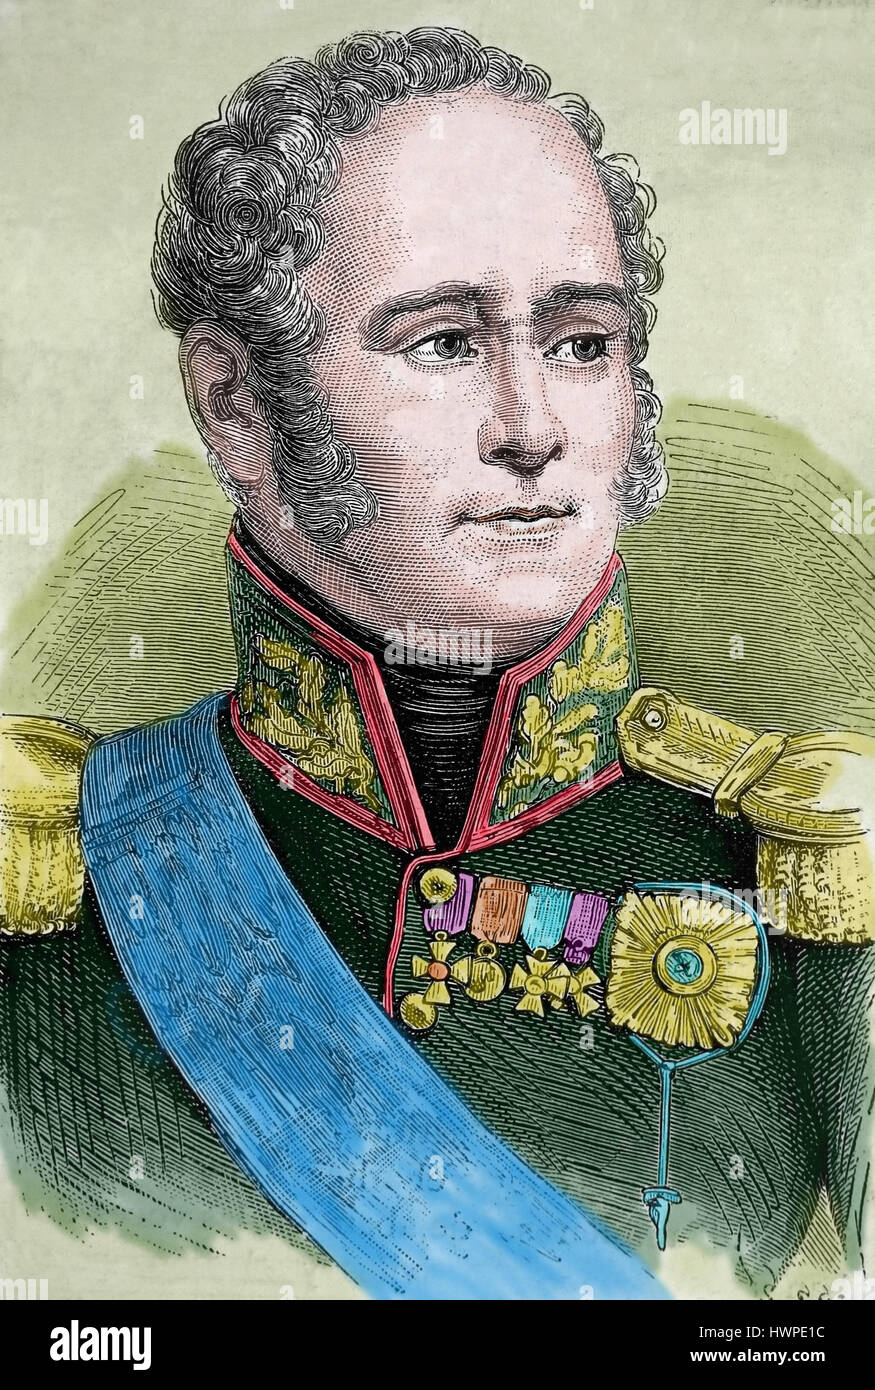 Alessandro I di Rusia (1777-1825). L'imperatore di Russia, re di Polonia, Granduca di Finlandia. Ritratto. Incisione, 1883. Colore. Foto Stock